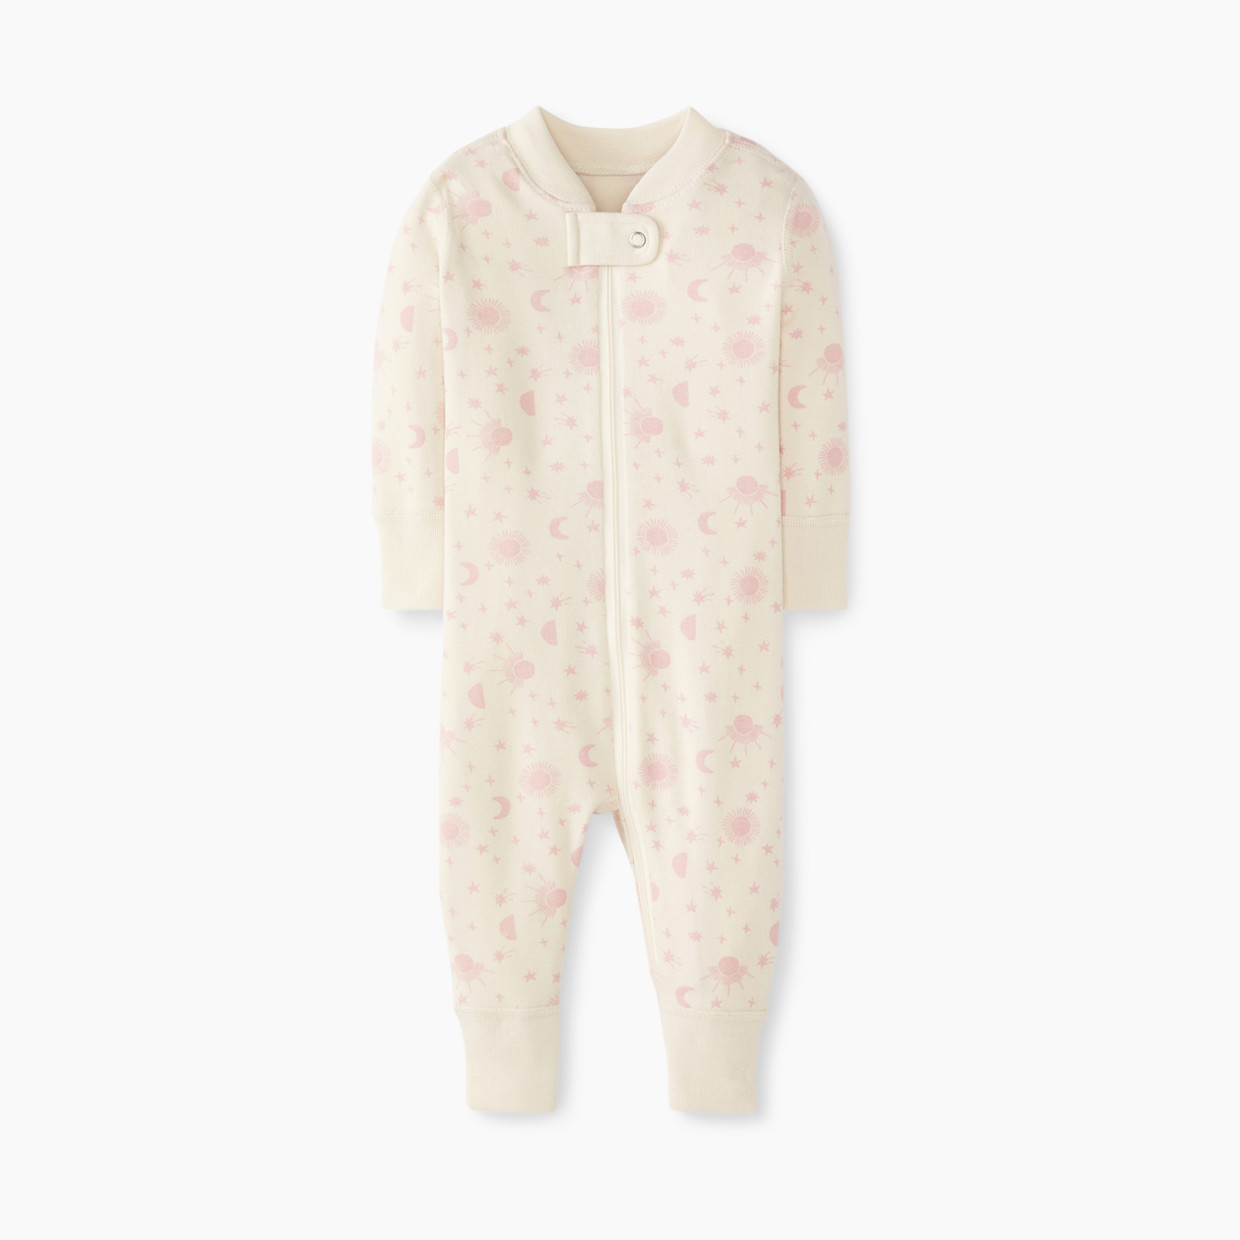 Hanna Andersson Baby Layette Zip Sleeper - Blush Pink, 3-6 Months.